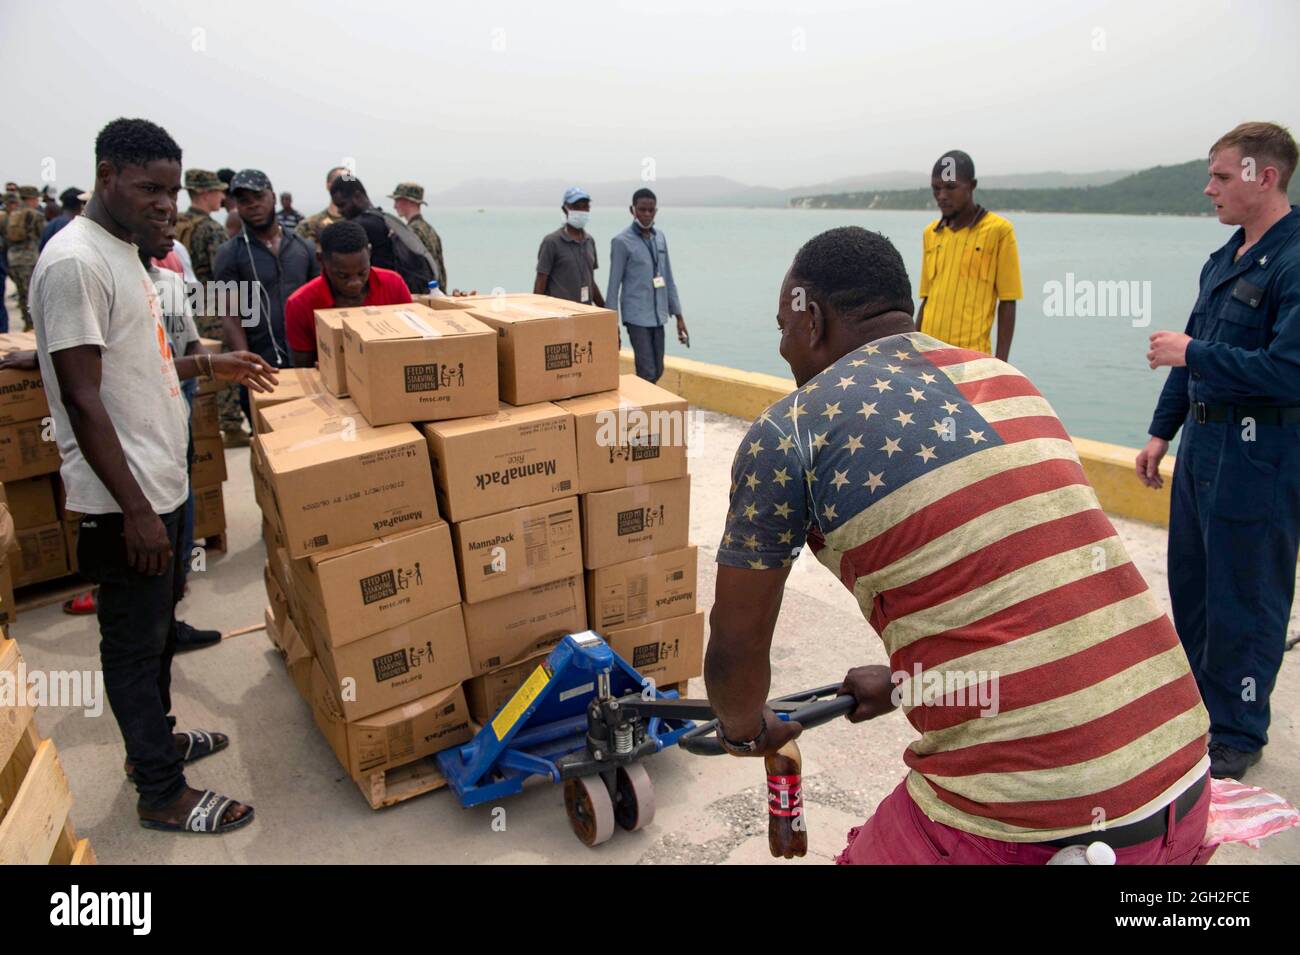 US-Marineinfanteristen, Matrosen und Freiwillige entluden während einer humanitären Mission am 31. August 2021 in Jeremie, Haiti, Lebensmittel von einem Landungsschiff im Hafen von Jeremie. Das Militär, die USAID und Freiwillige helfen nach dem jüngsten Erdbeben. Stockfoto